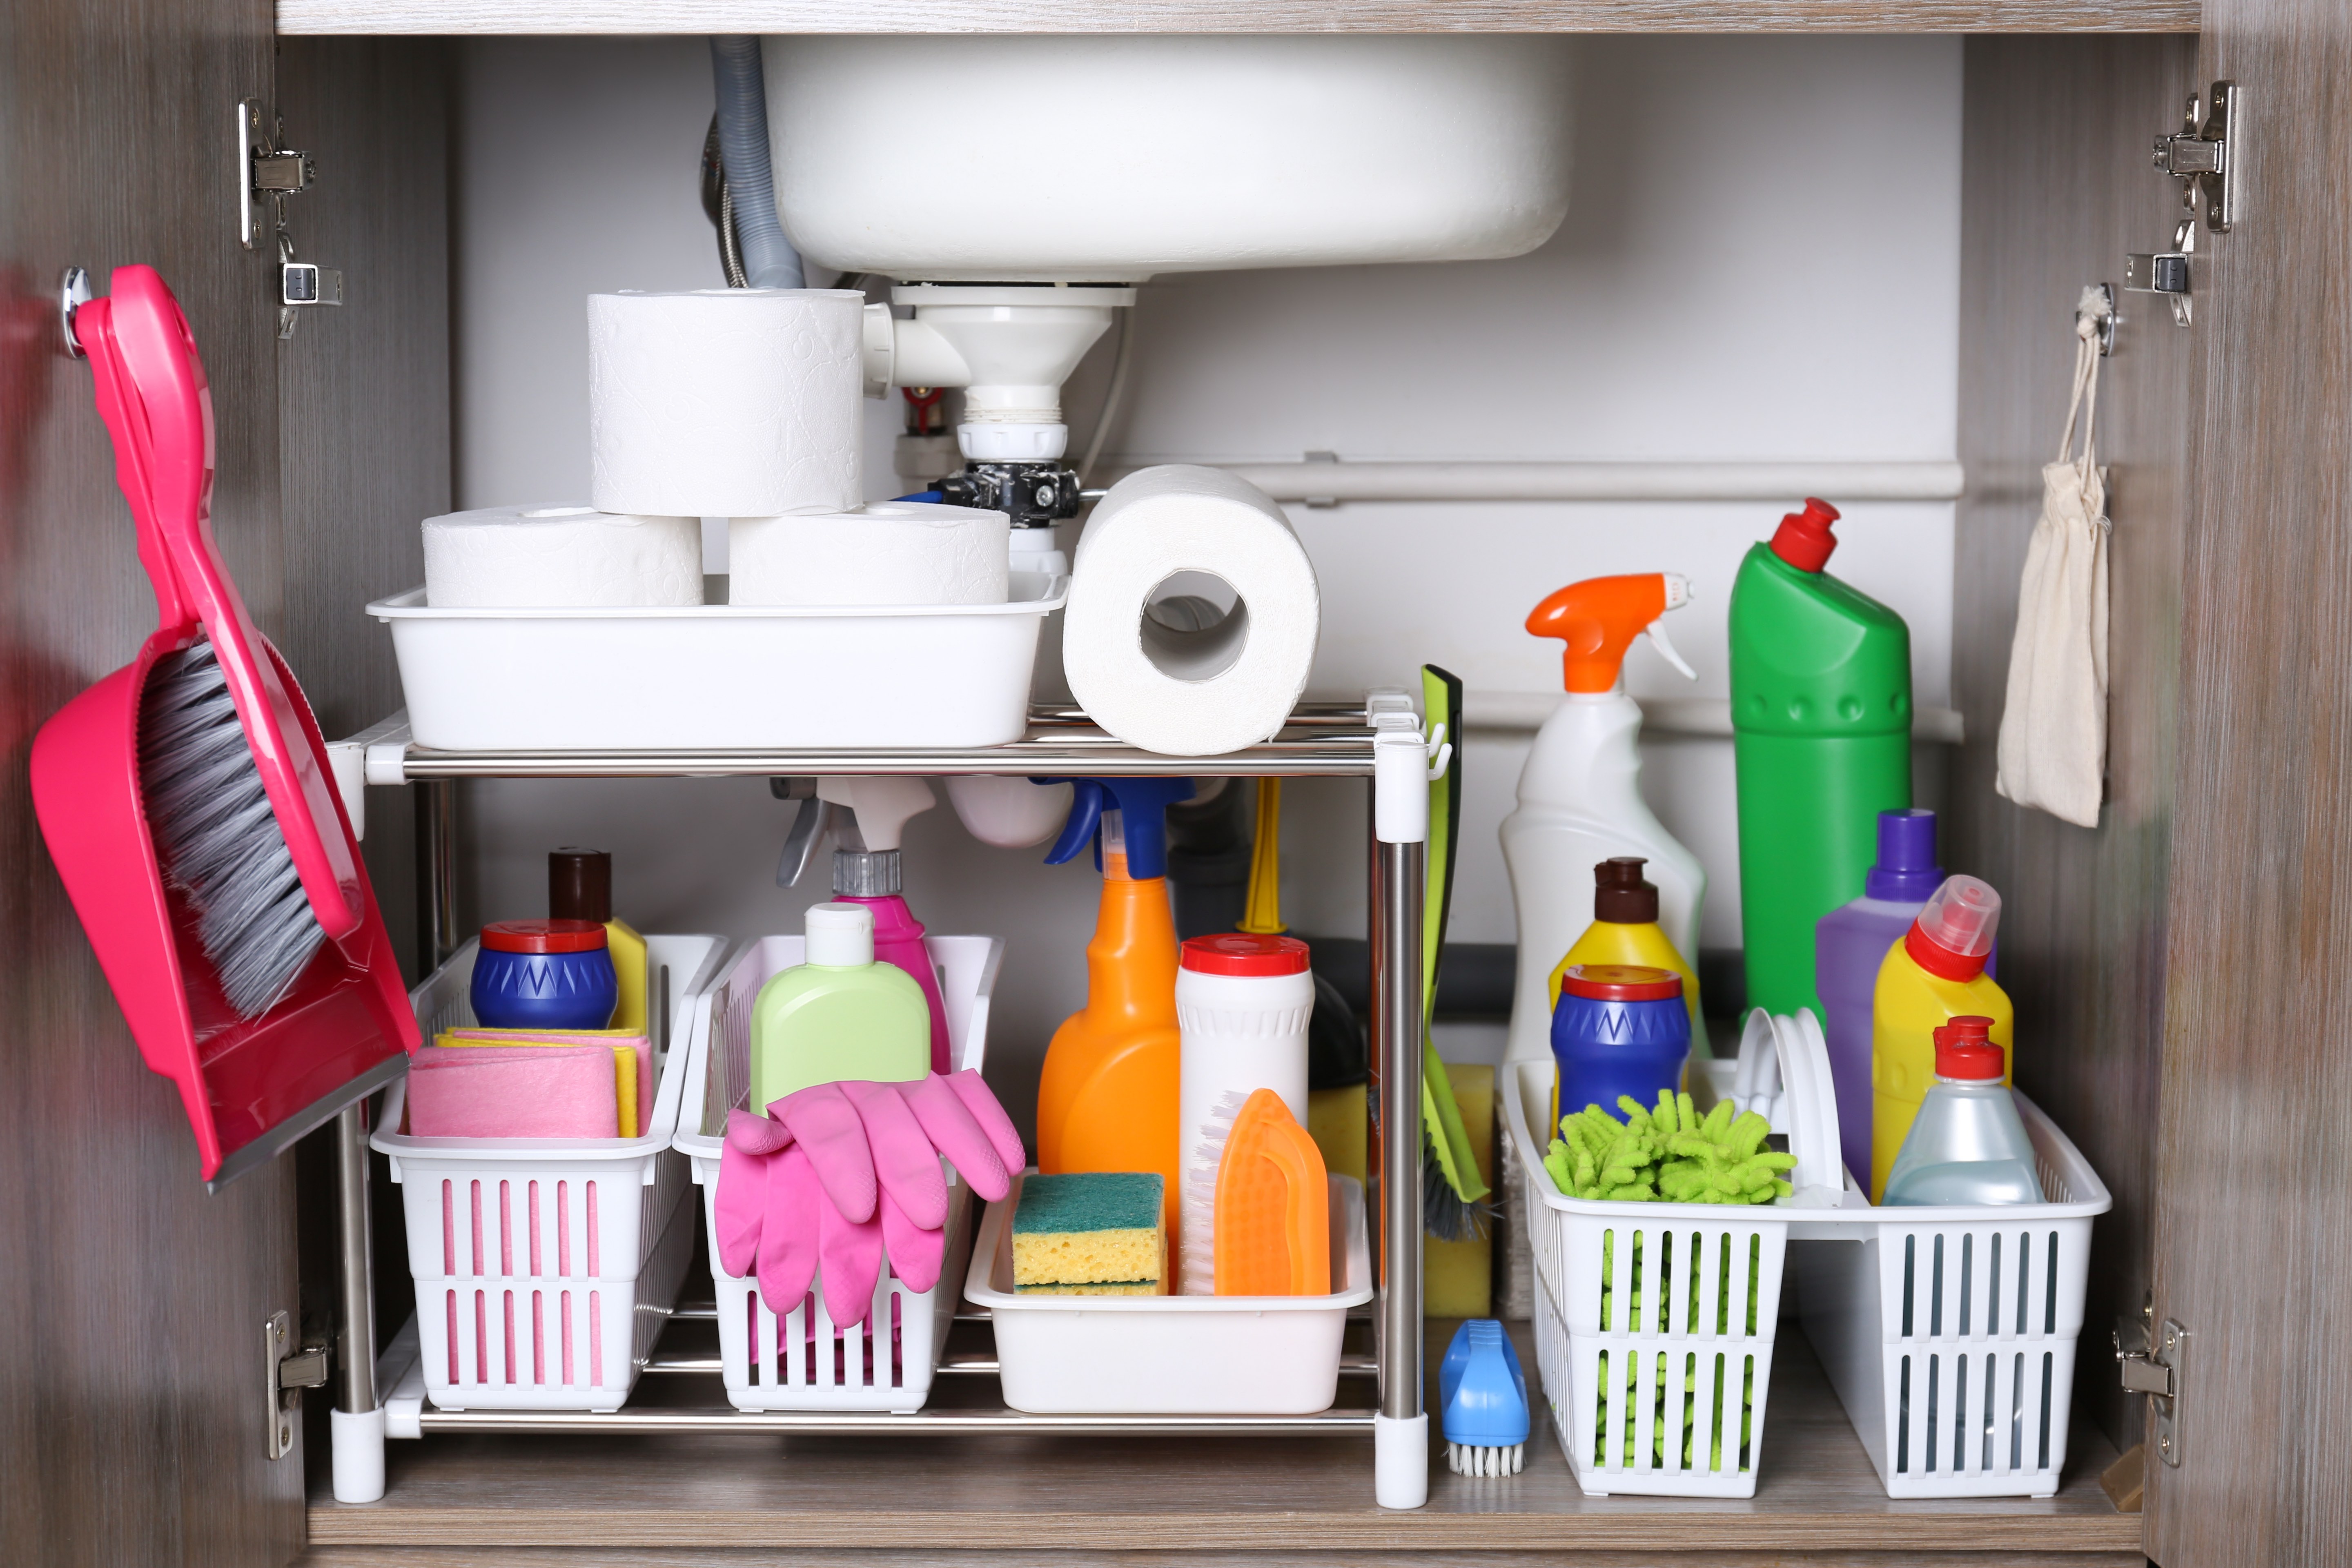 The Best Ways to Organize Under the Kitchen Sink